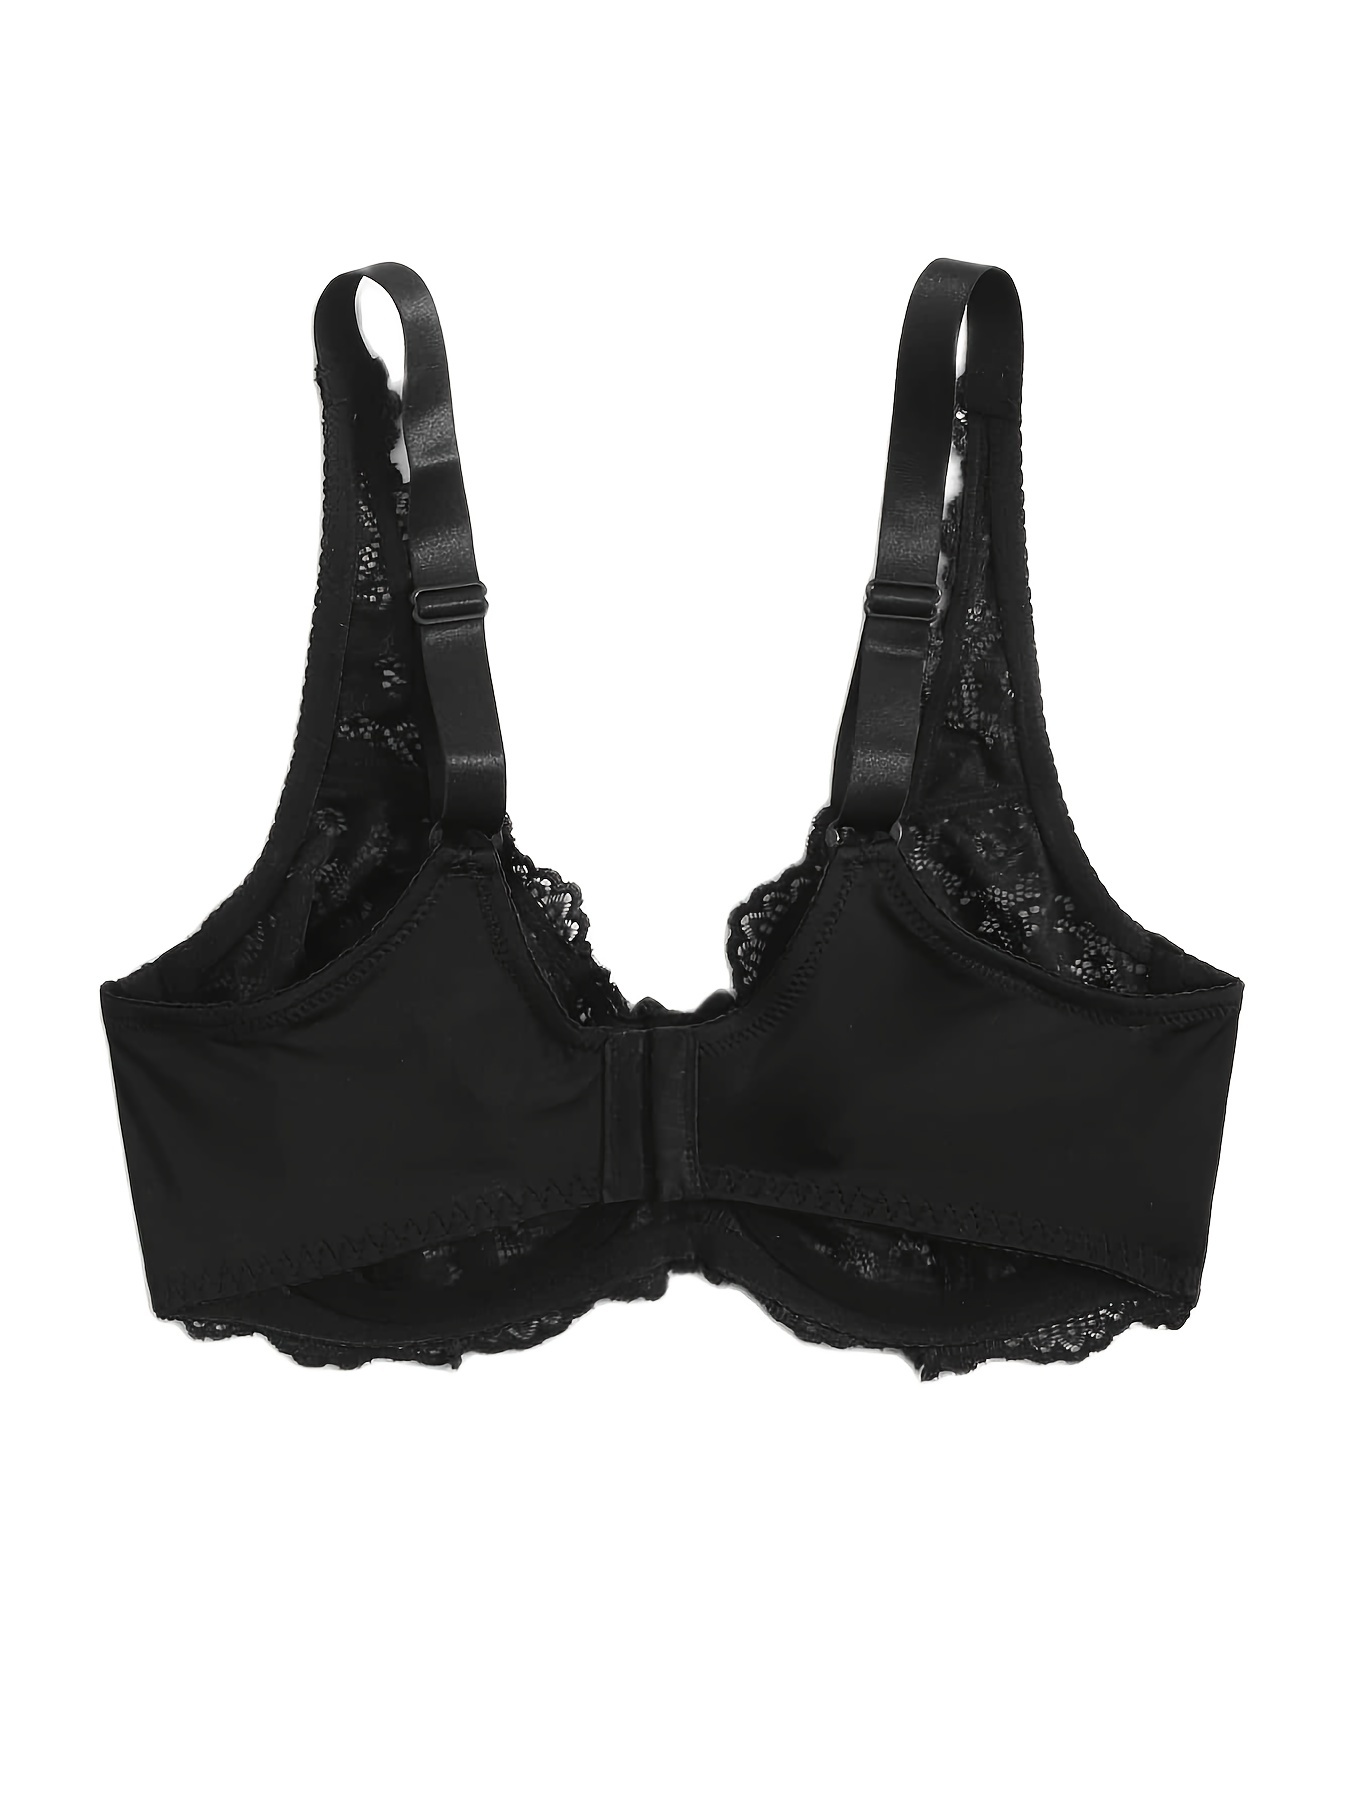 Black Bralette with Underwire Best Plus Size Bras Women 1PC Underwire  Lingerie Lace Vest Women's Elegant Dirndl, Black, Small : :  Clothing, Shoes & Accessories